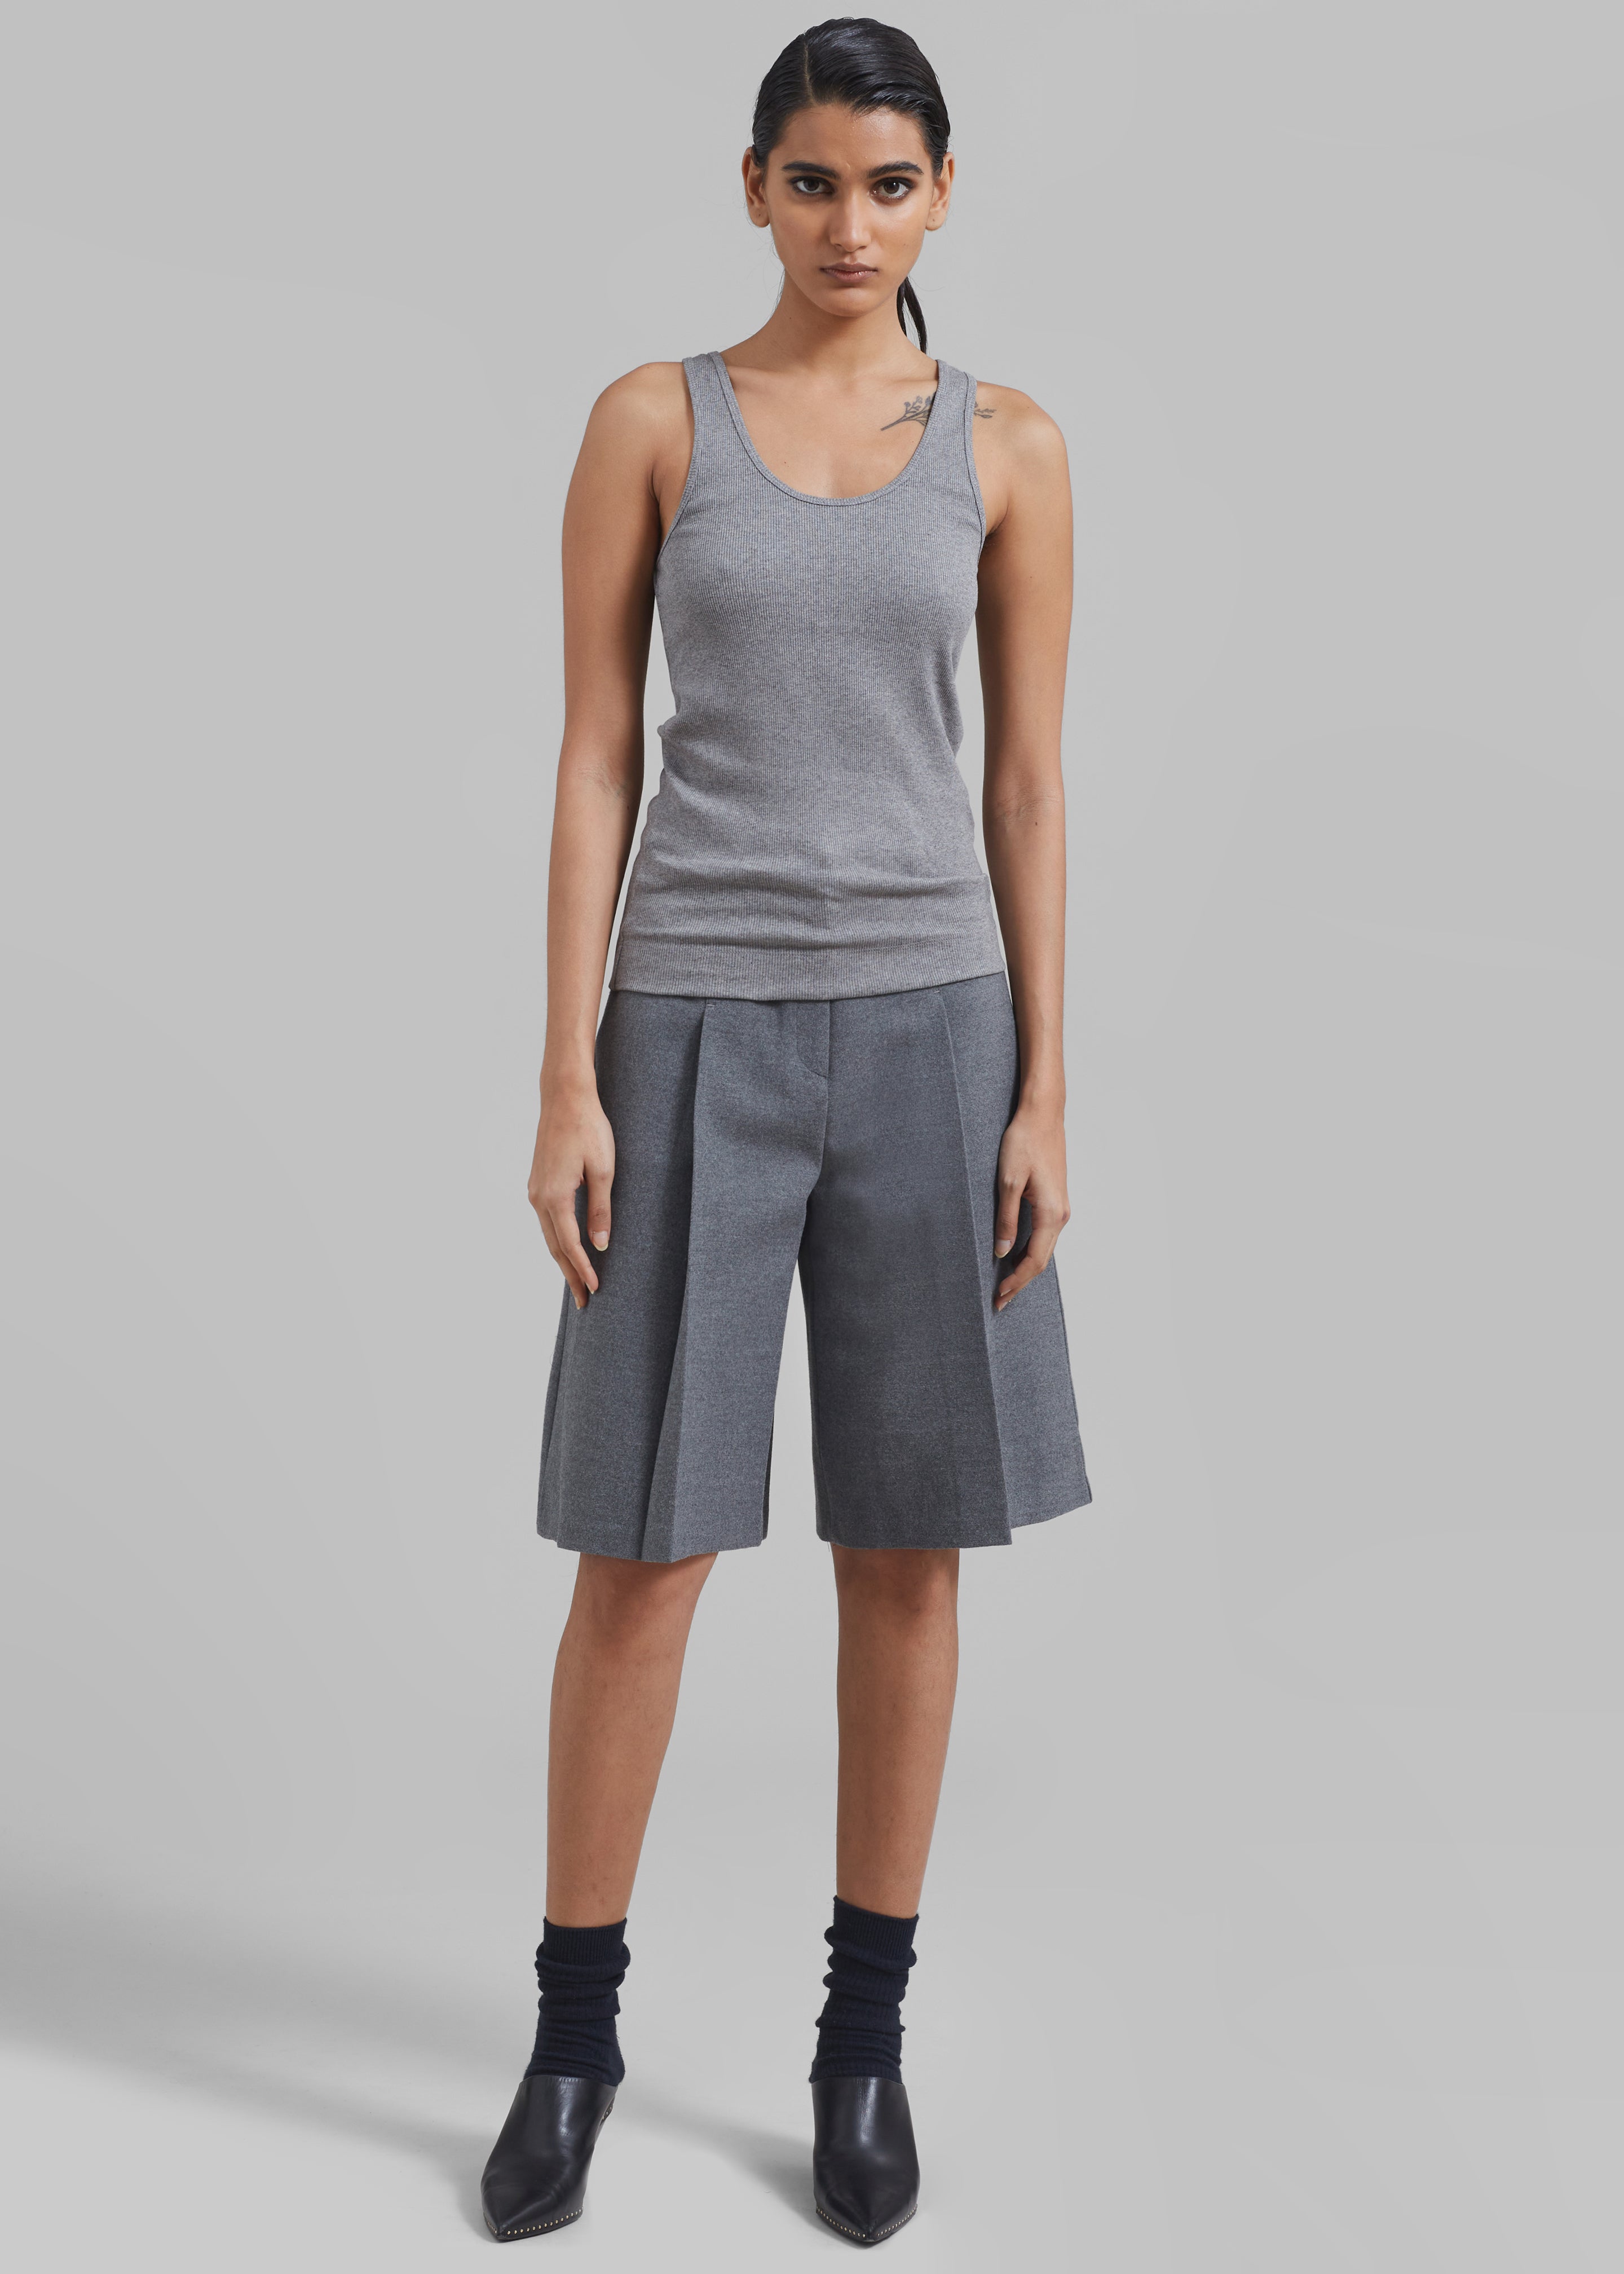 Austen Bermuda Shorts - Grey - 7